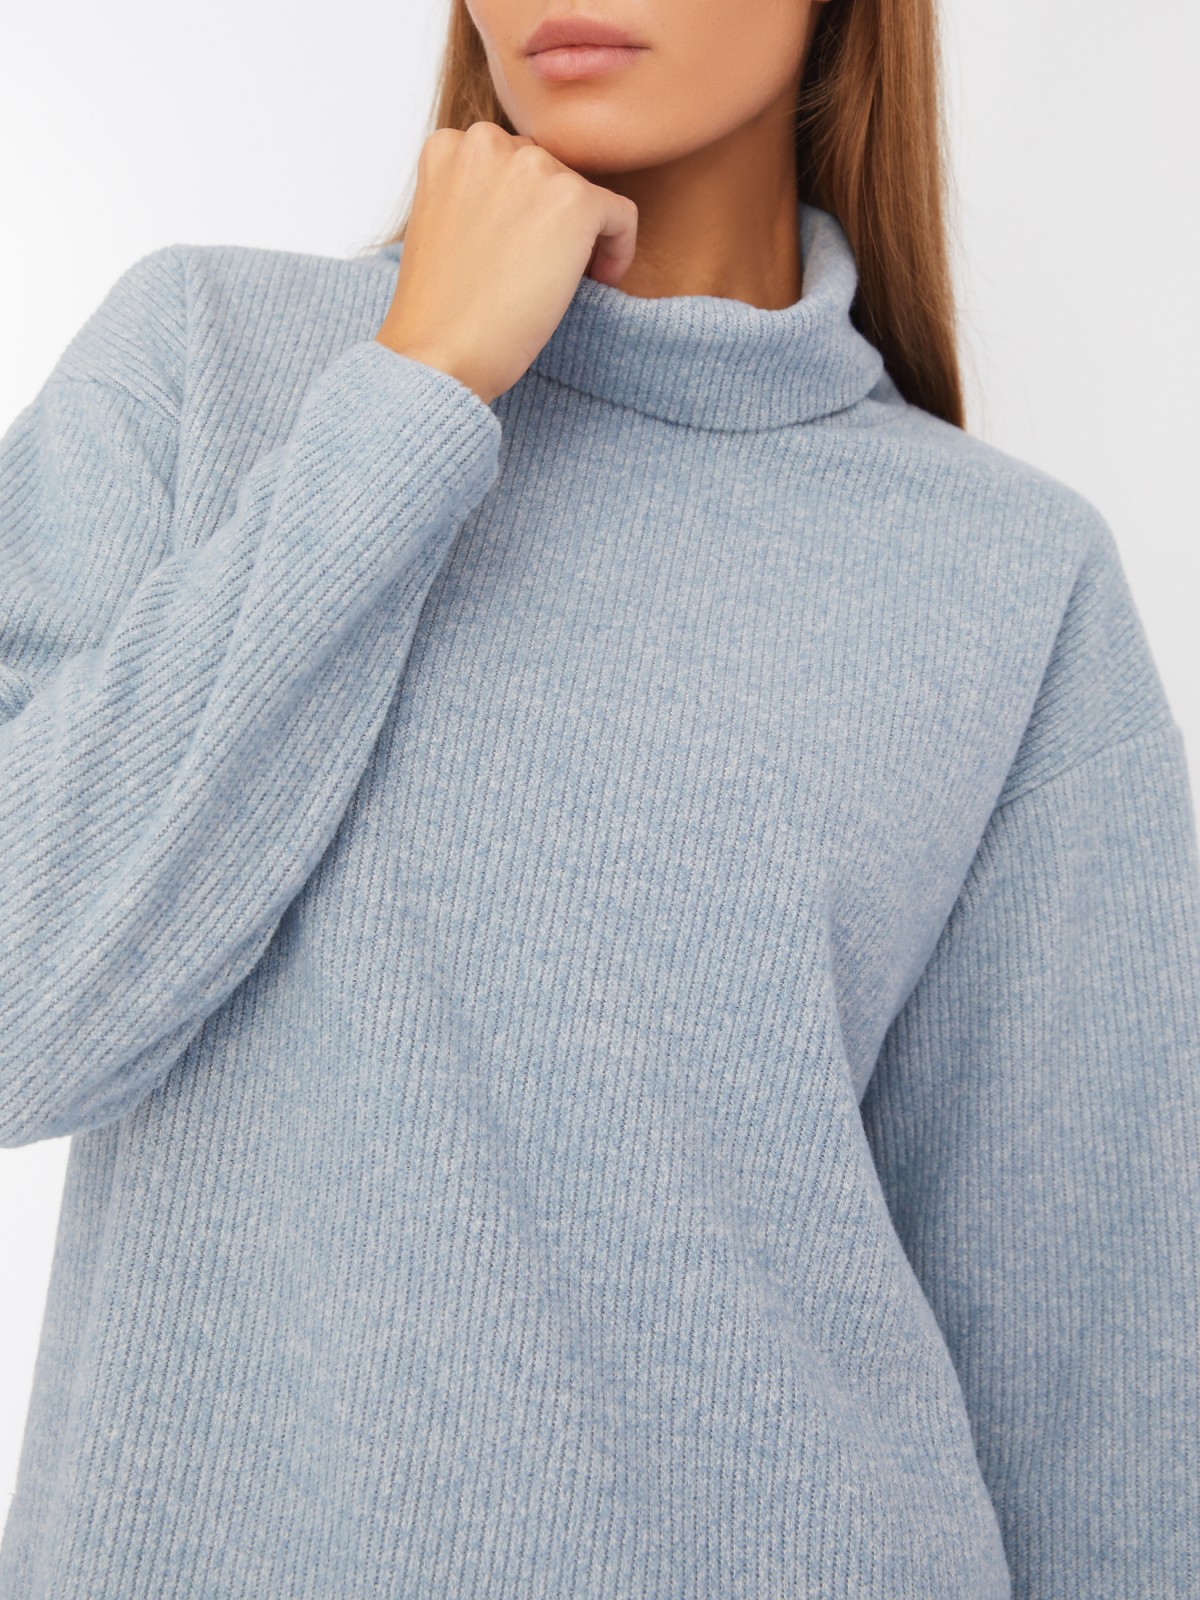 Вязаный свитер прямого силуэта с воротником-хомутом zolla 223433159053, цвет голубой, размер XS - фото 4